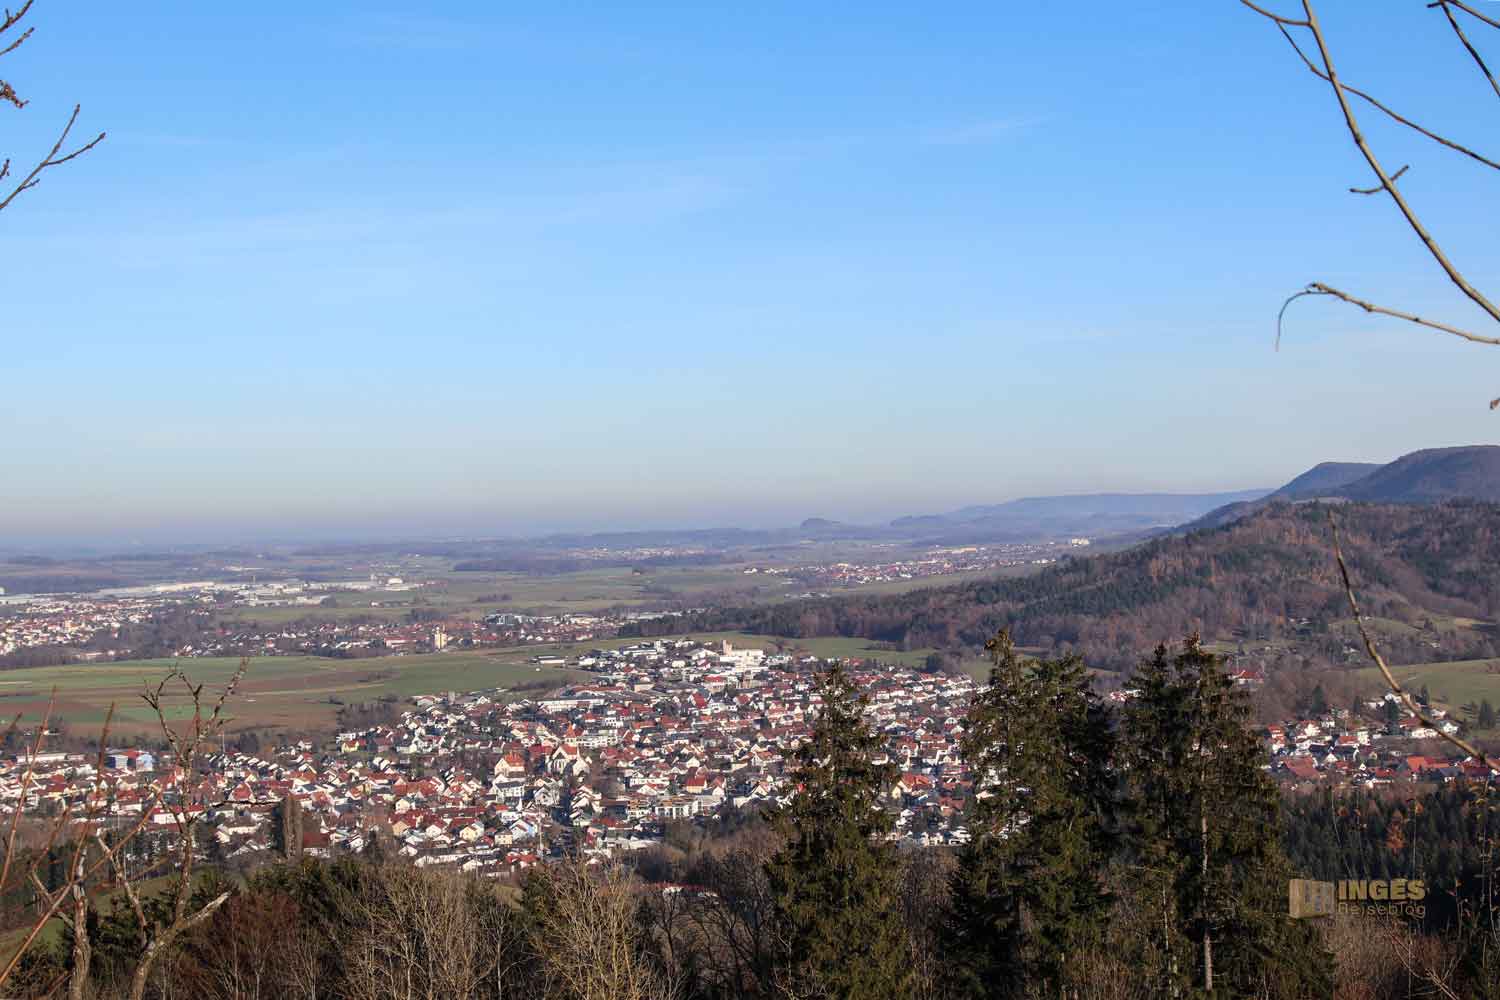 Blick vom Rechberg auf Waldstetten 0213